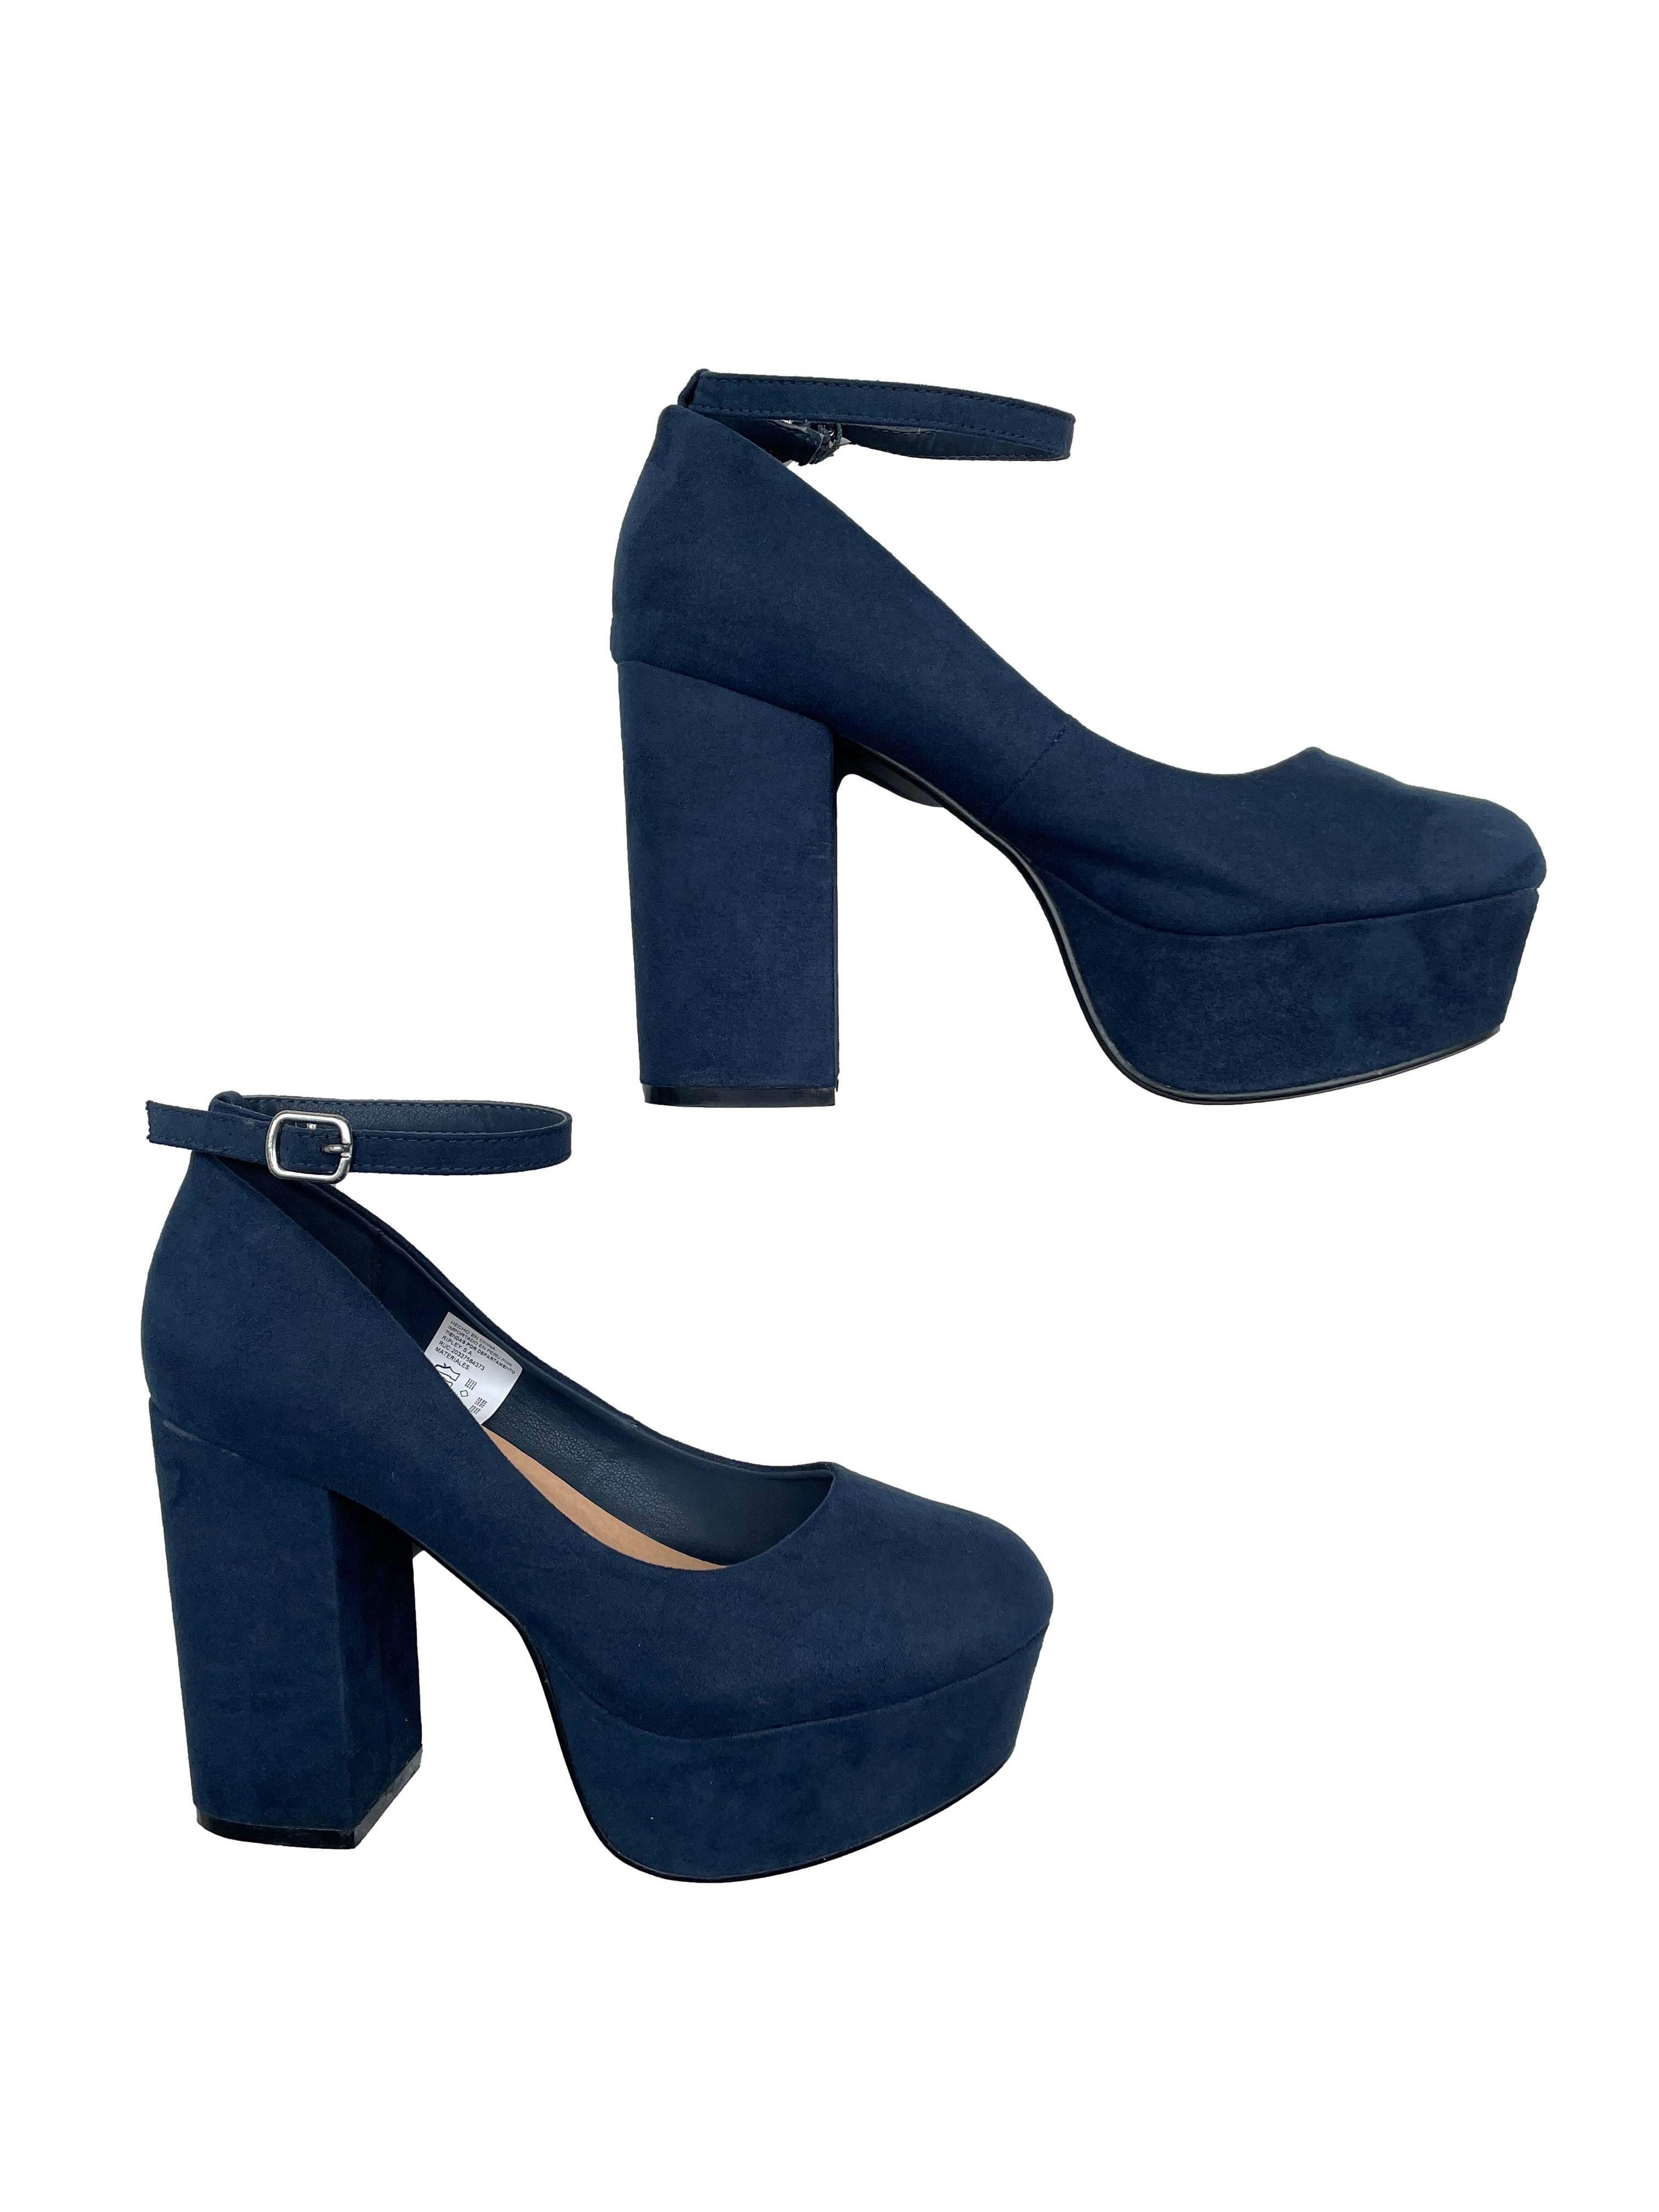 Simpático Juramento consumidor Zapatos Index azul marino tipo gamuza, modelo con correa en tobillo, taco  11cm, plataforma 4cm. Estado 9/10. | Las Traperas